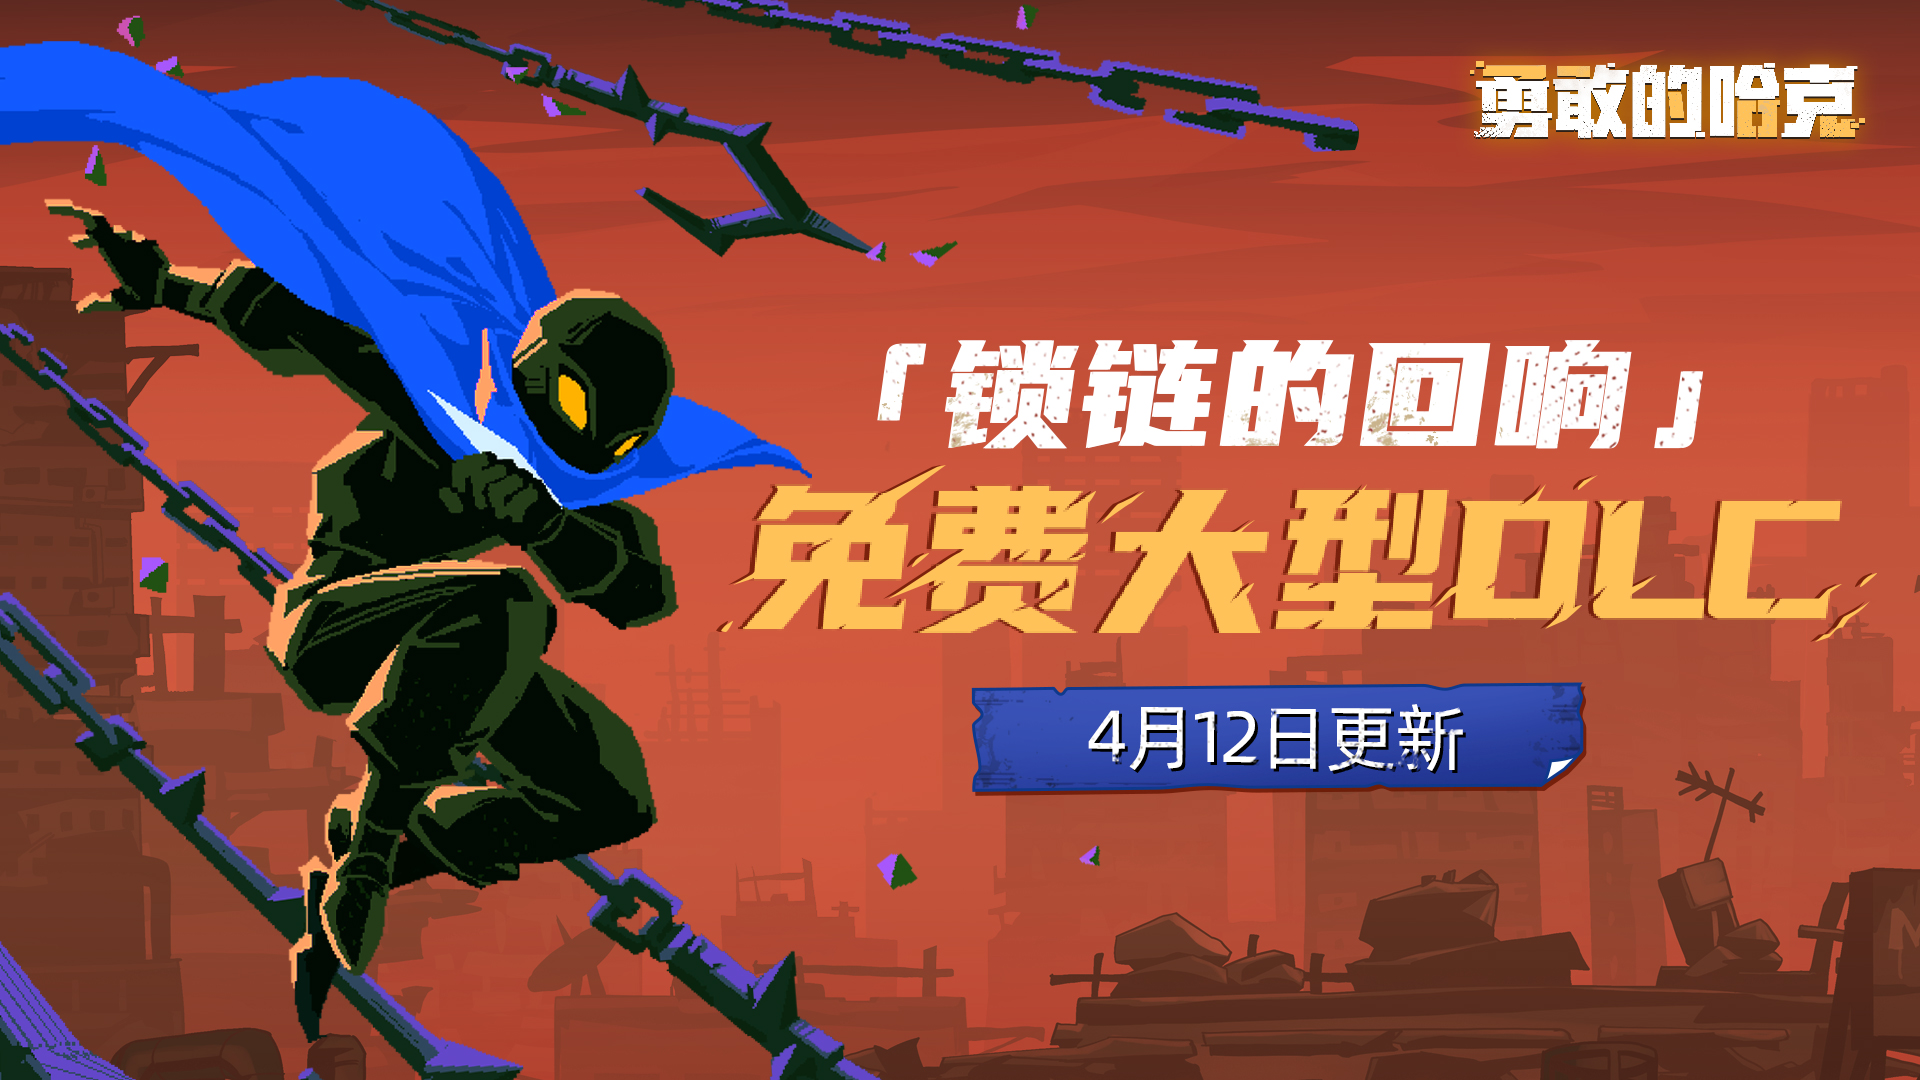 【勇敢的哈克手游】免费大型DLC「锁链的回响」4月12日上线